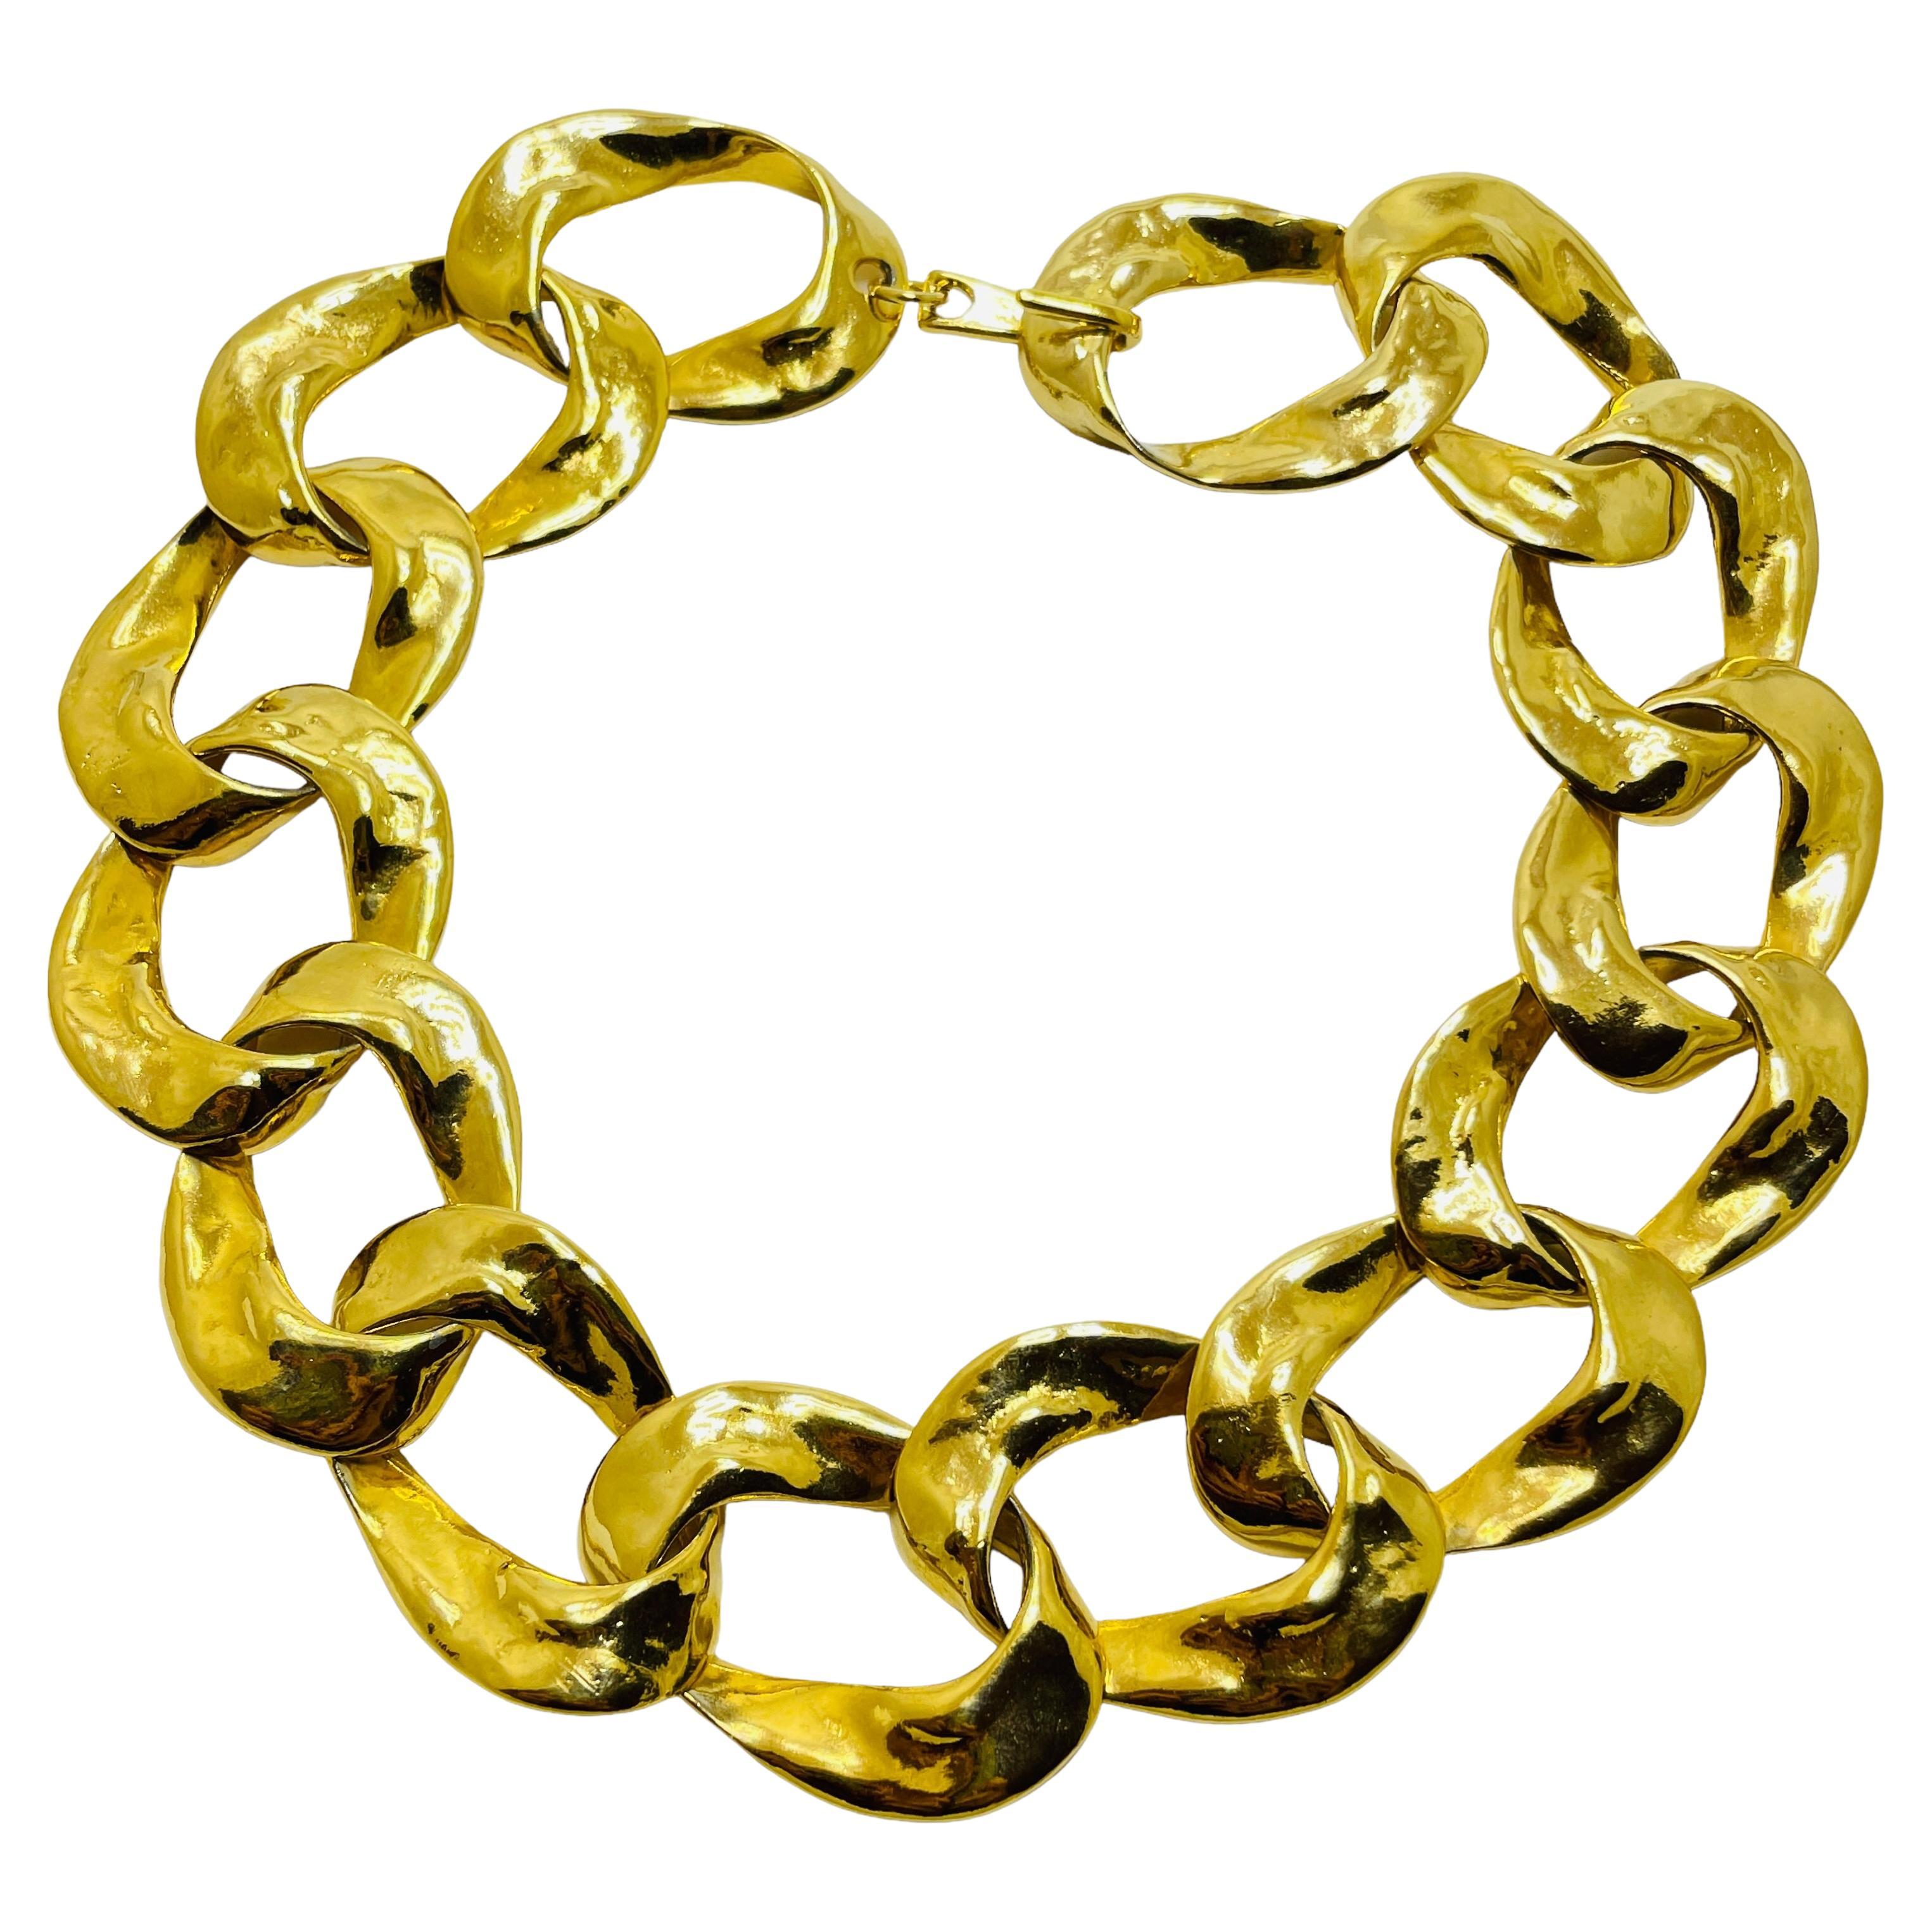 Vintage massive gold link chain designer runway choker necklace